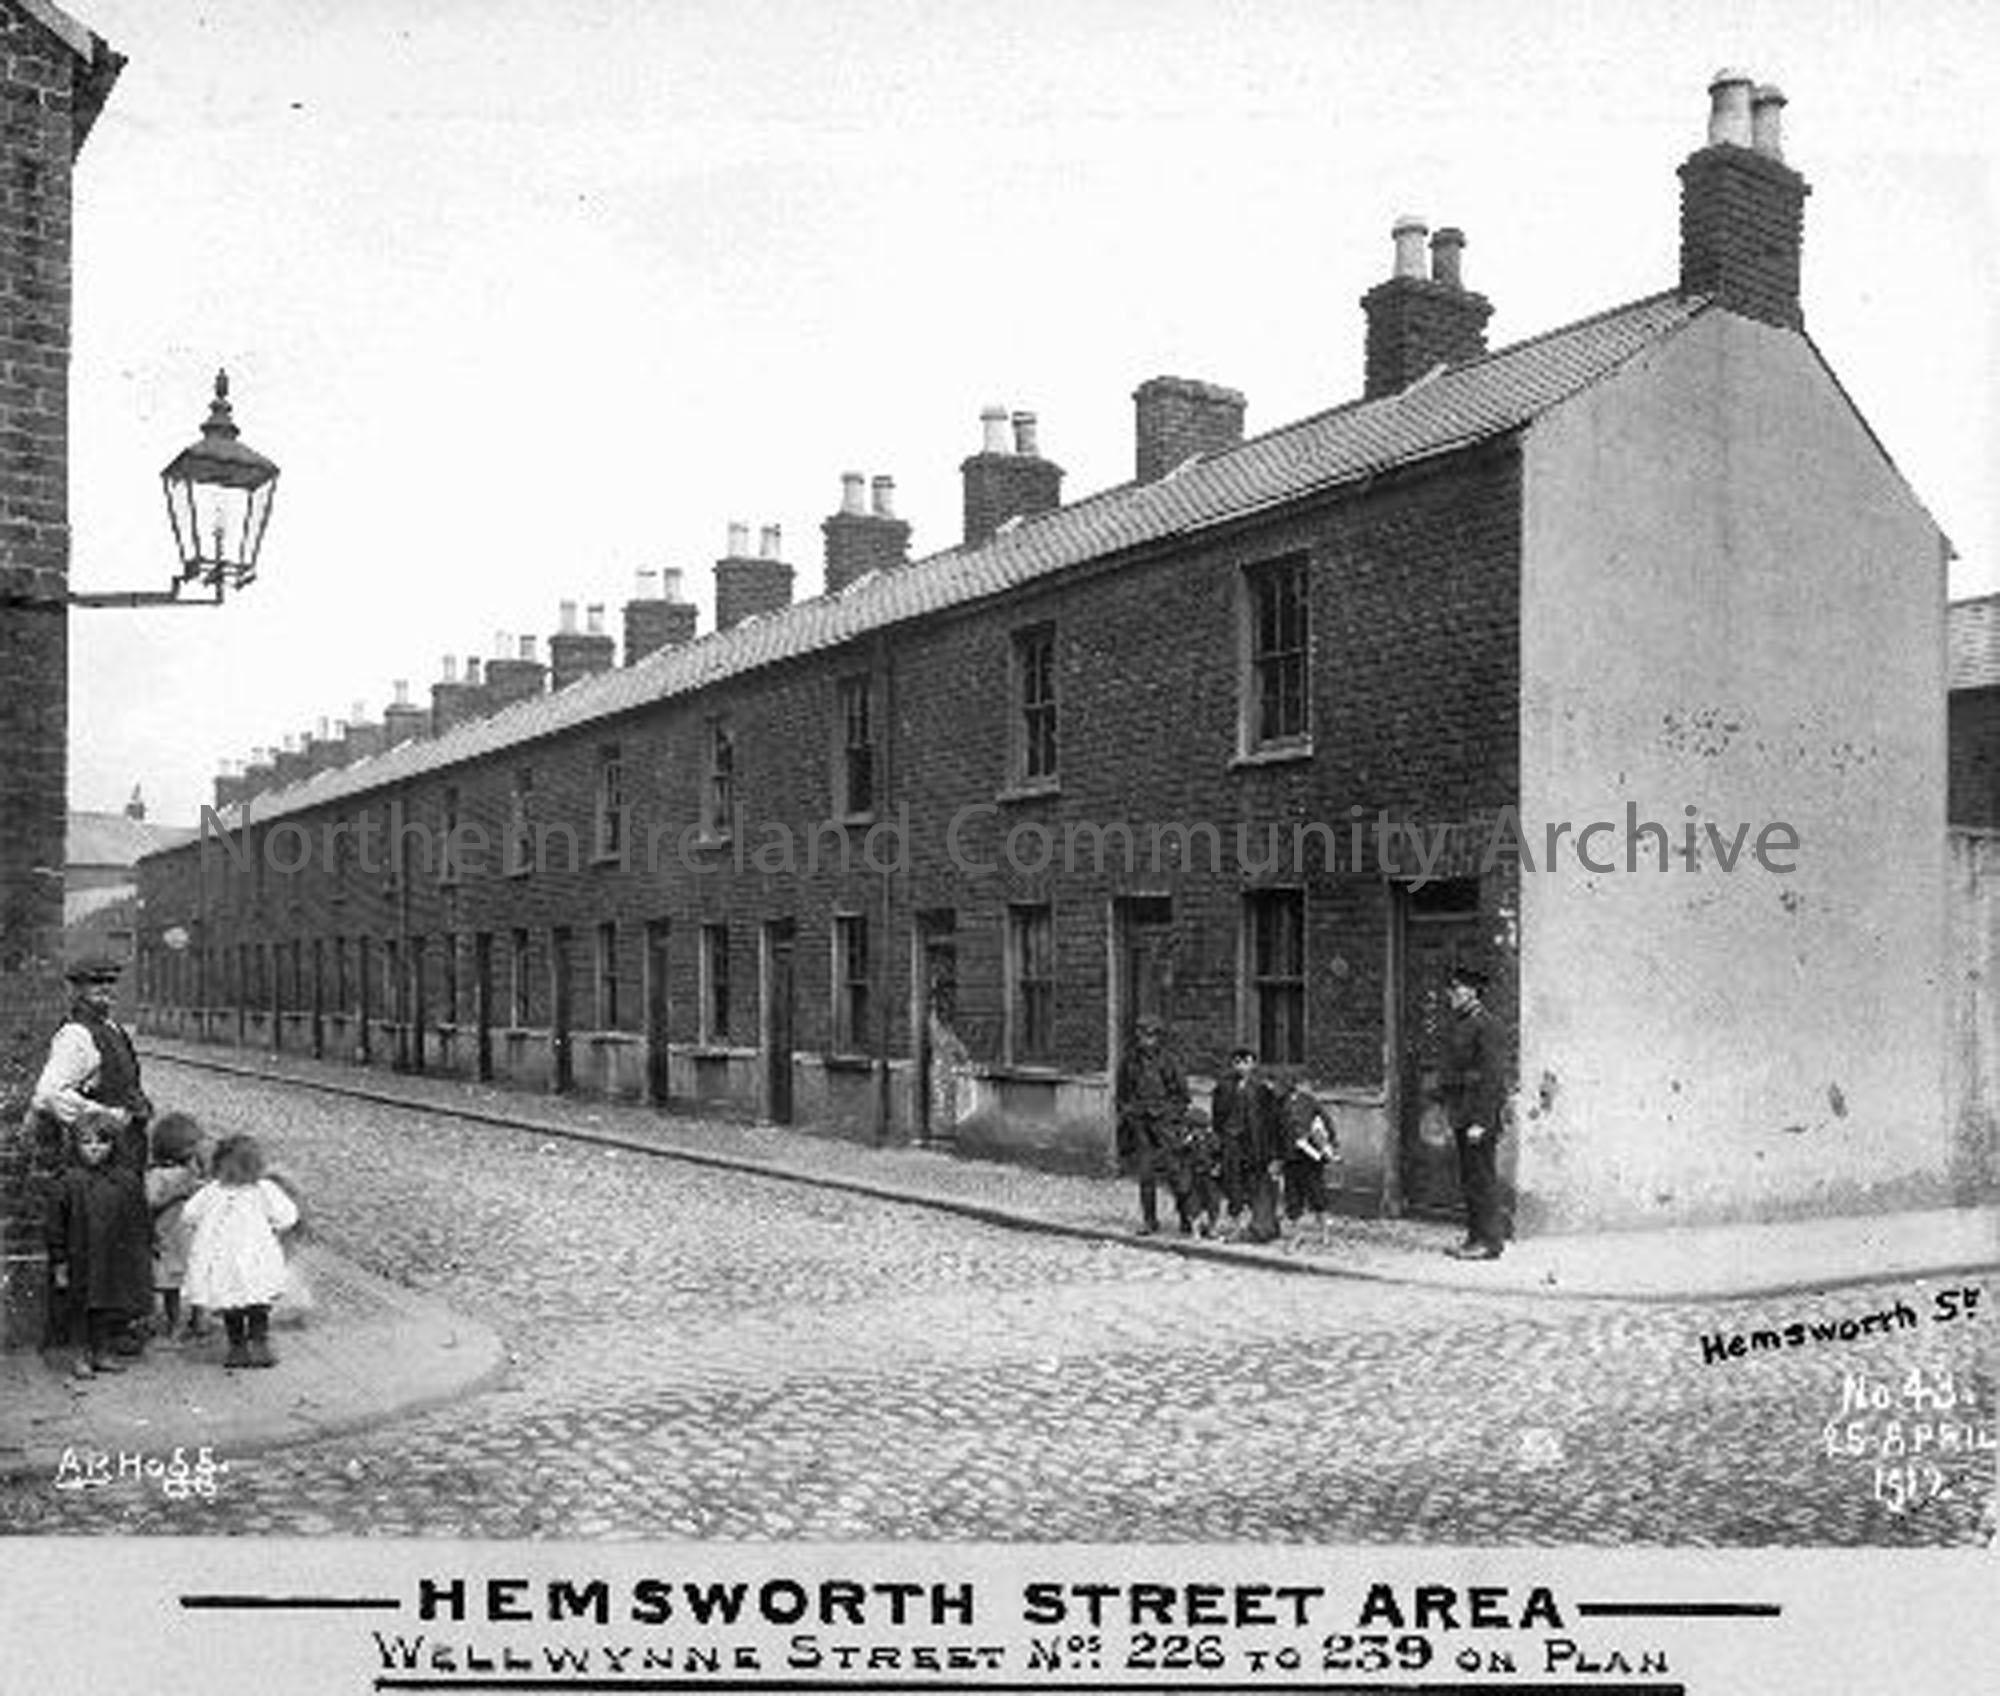 Hemsworth Street Area – Wellwynne Street (3682)